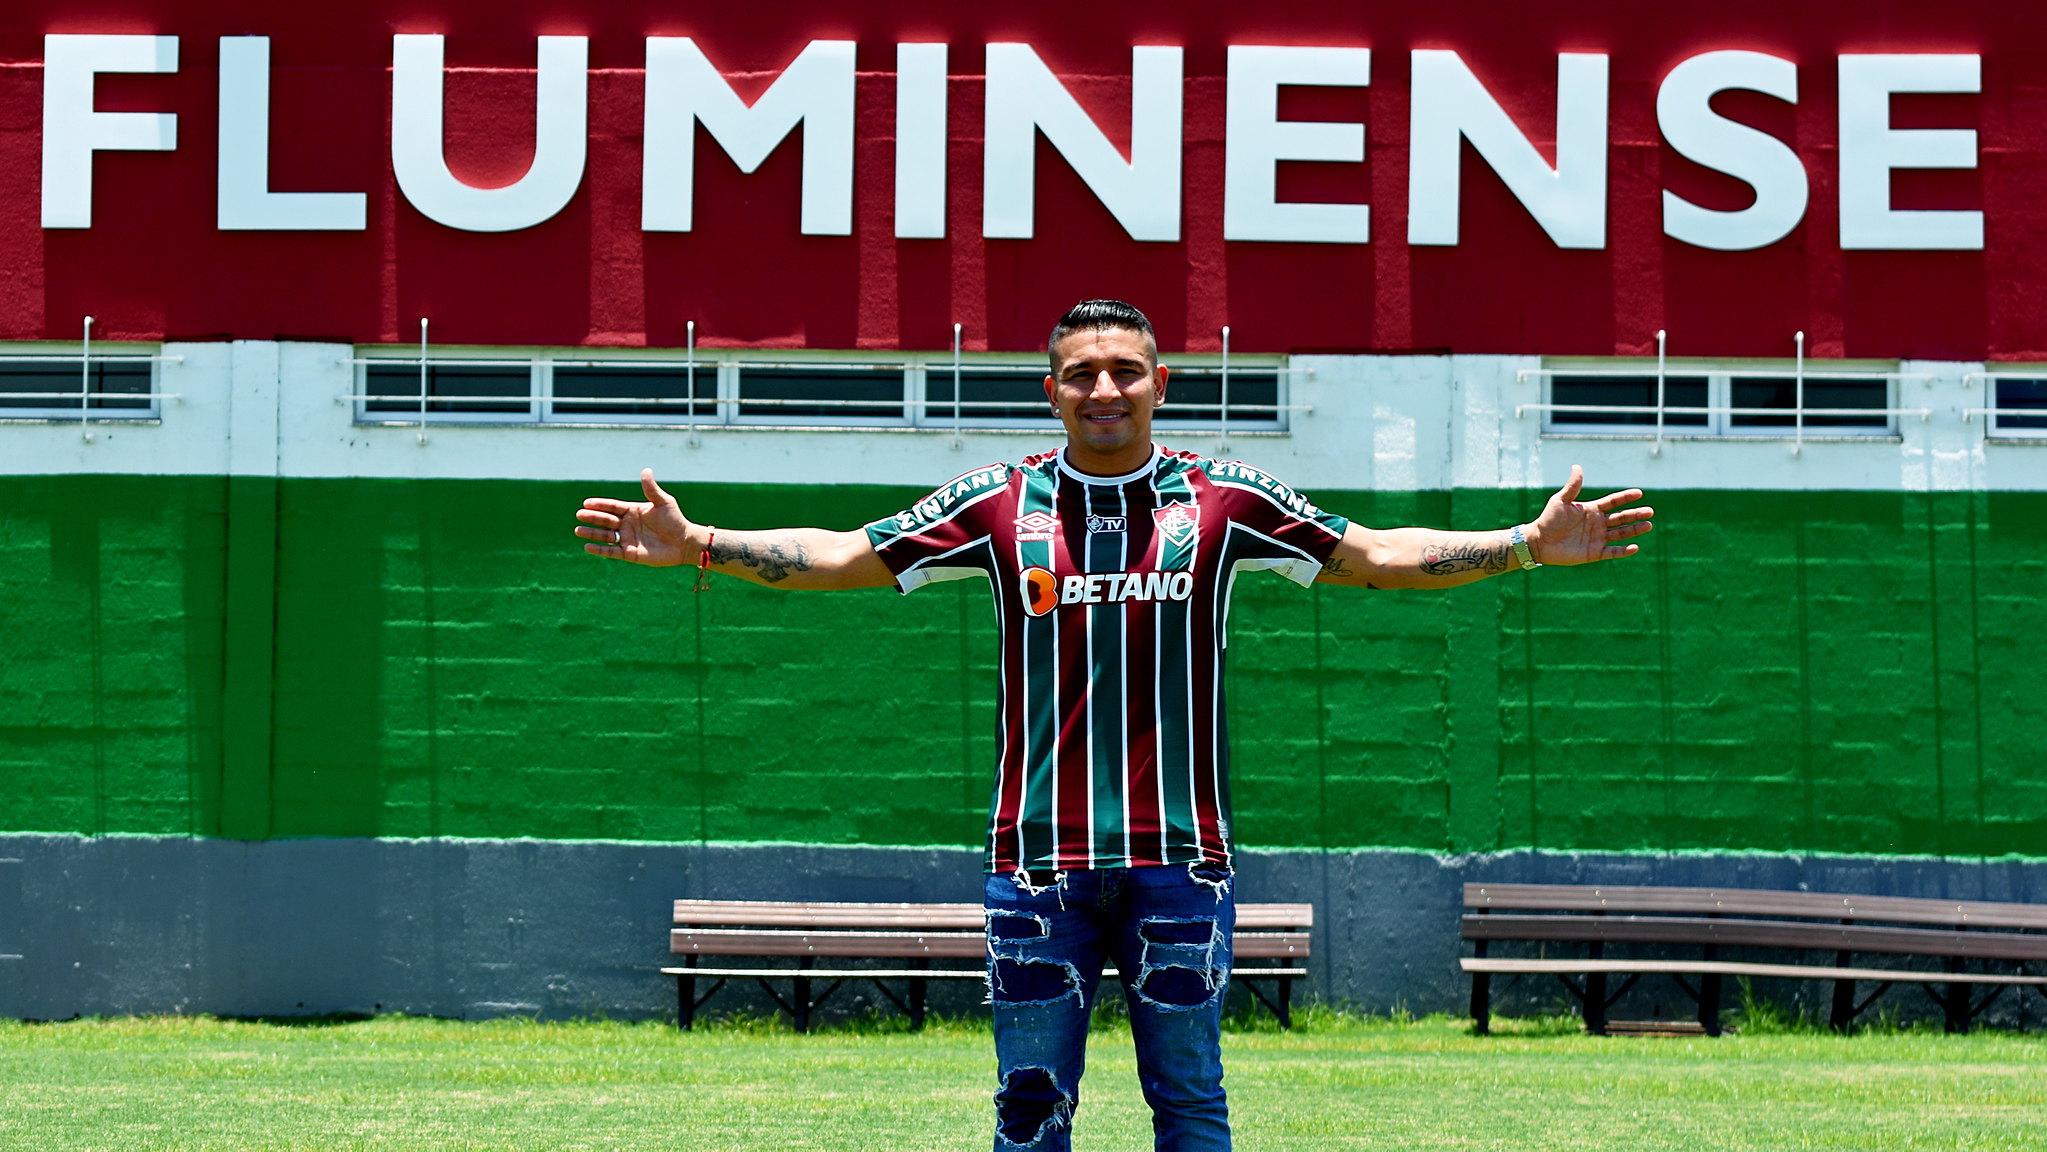 Pineida posa para foto na frente do nome 'Fluminense'